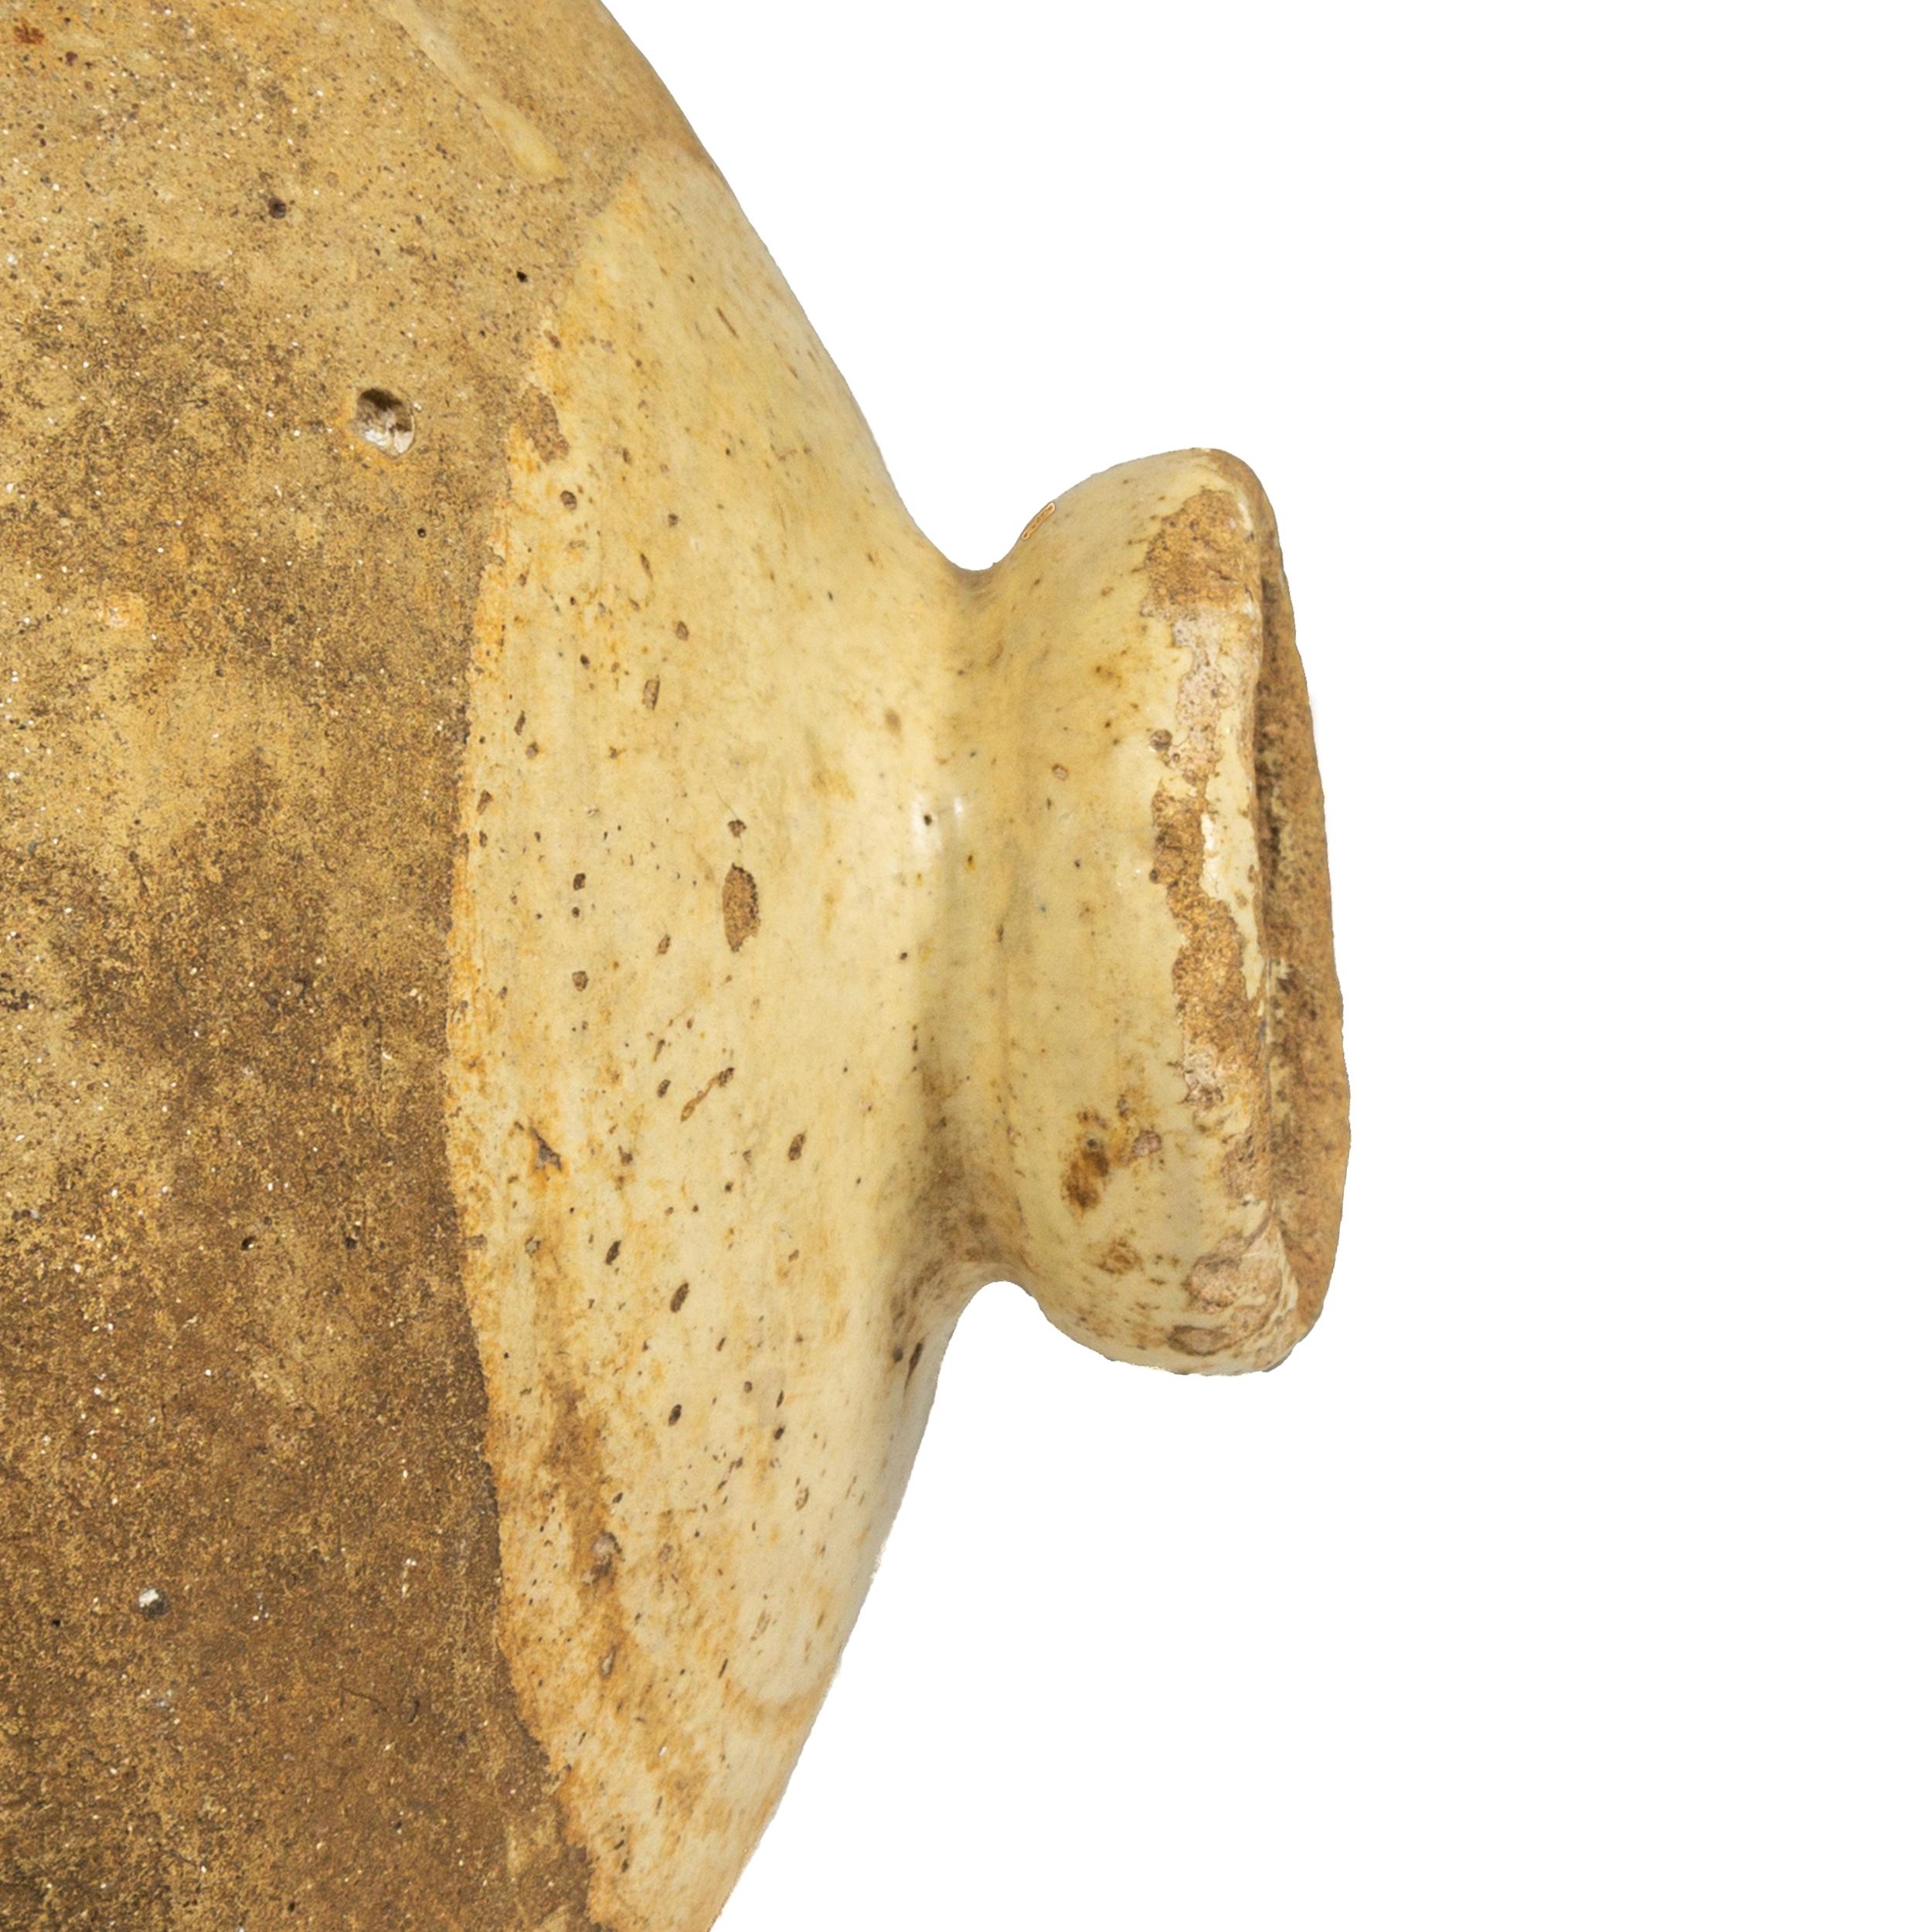 Botija de cerámica vidriada de mediados del siglo XVIII encontrada en el sur de México Cerámico en venta